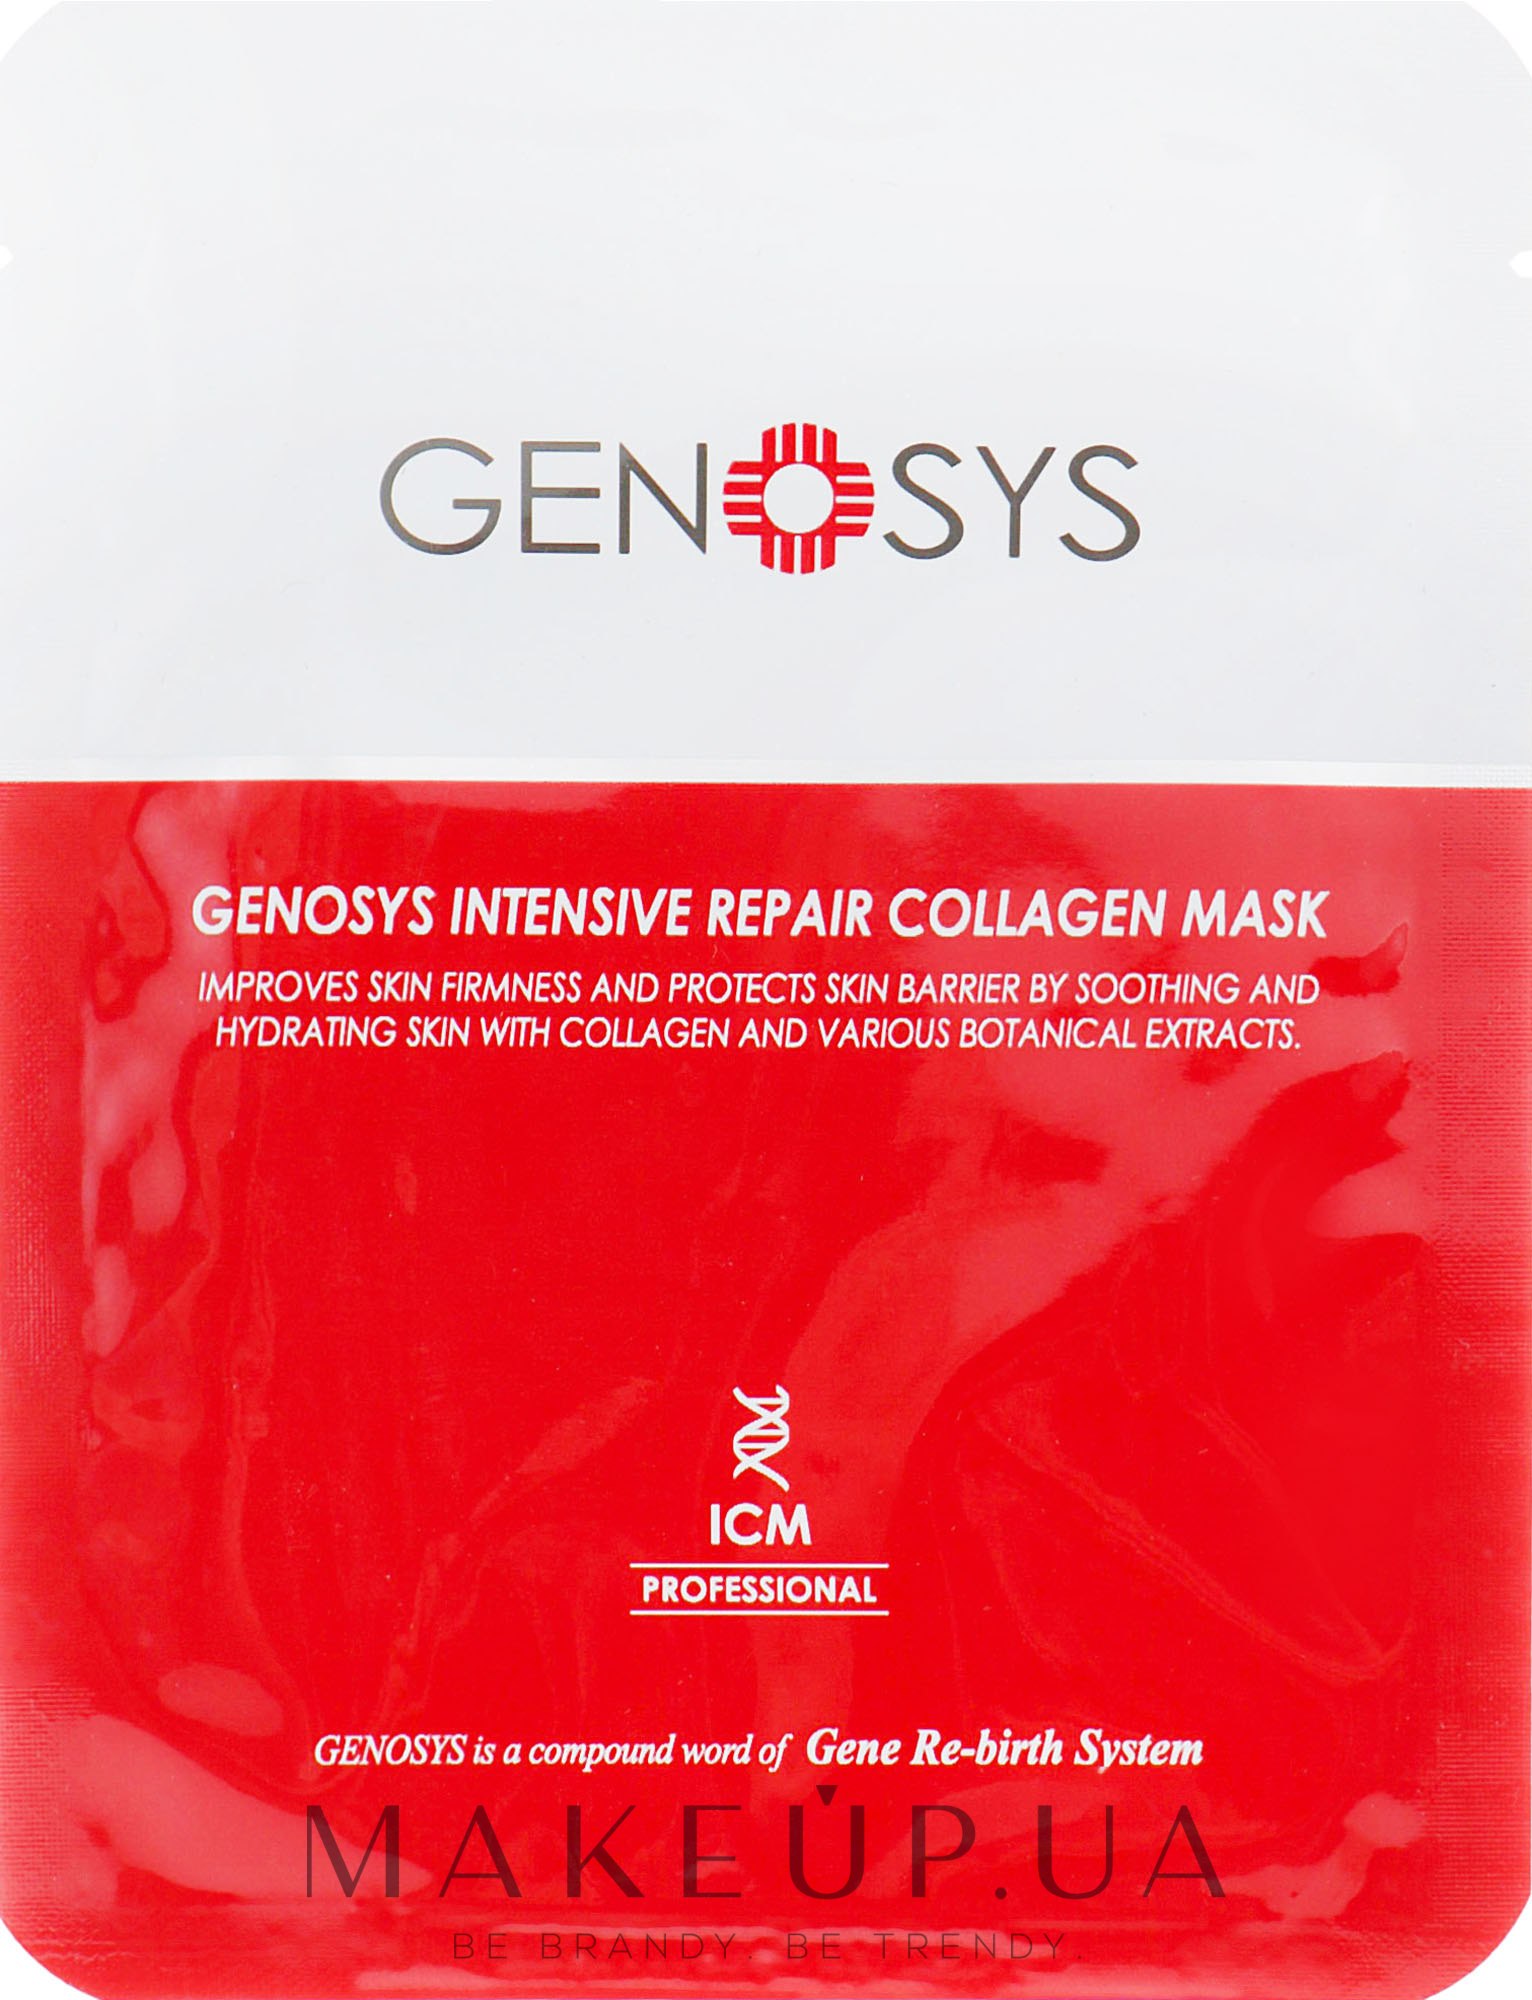 Колагенова маска, інтенсивно відновлювальна - Genosys Intensive Repair Collagen Mask — фото 23g